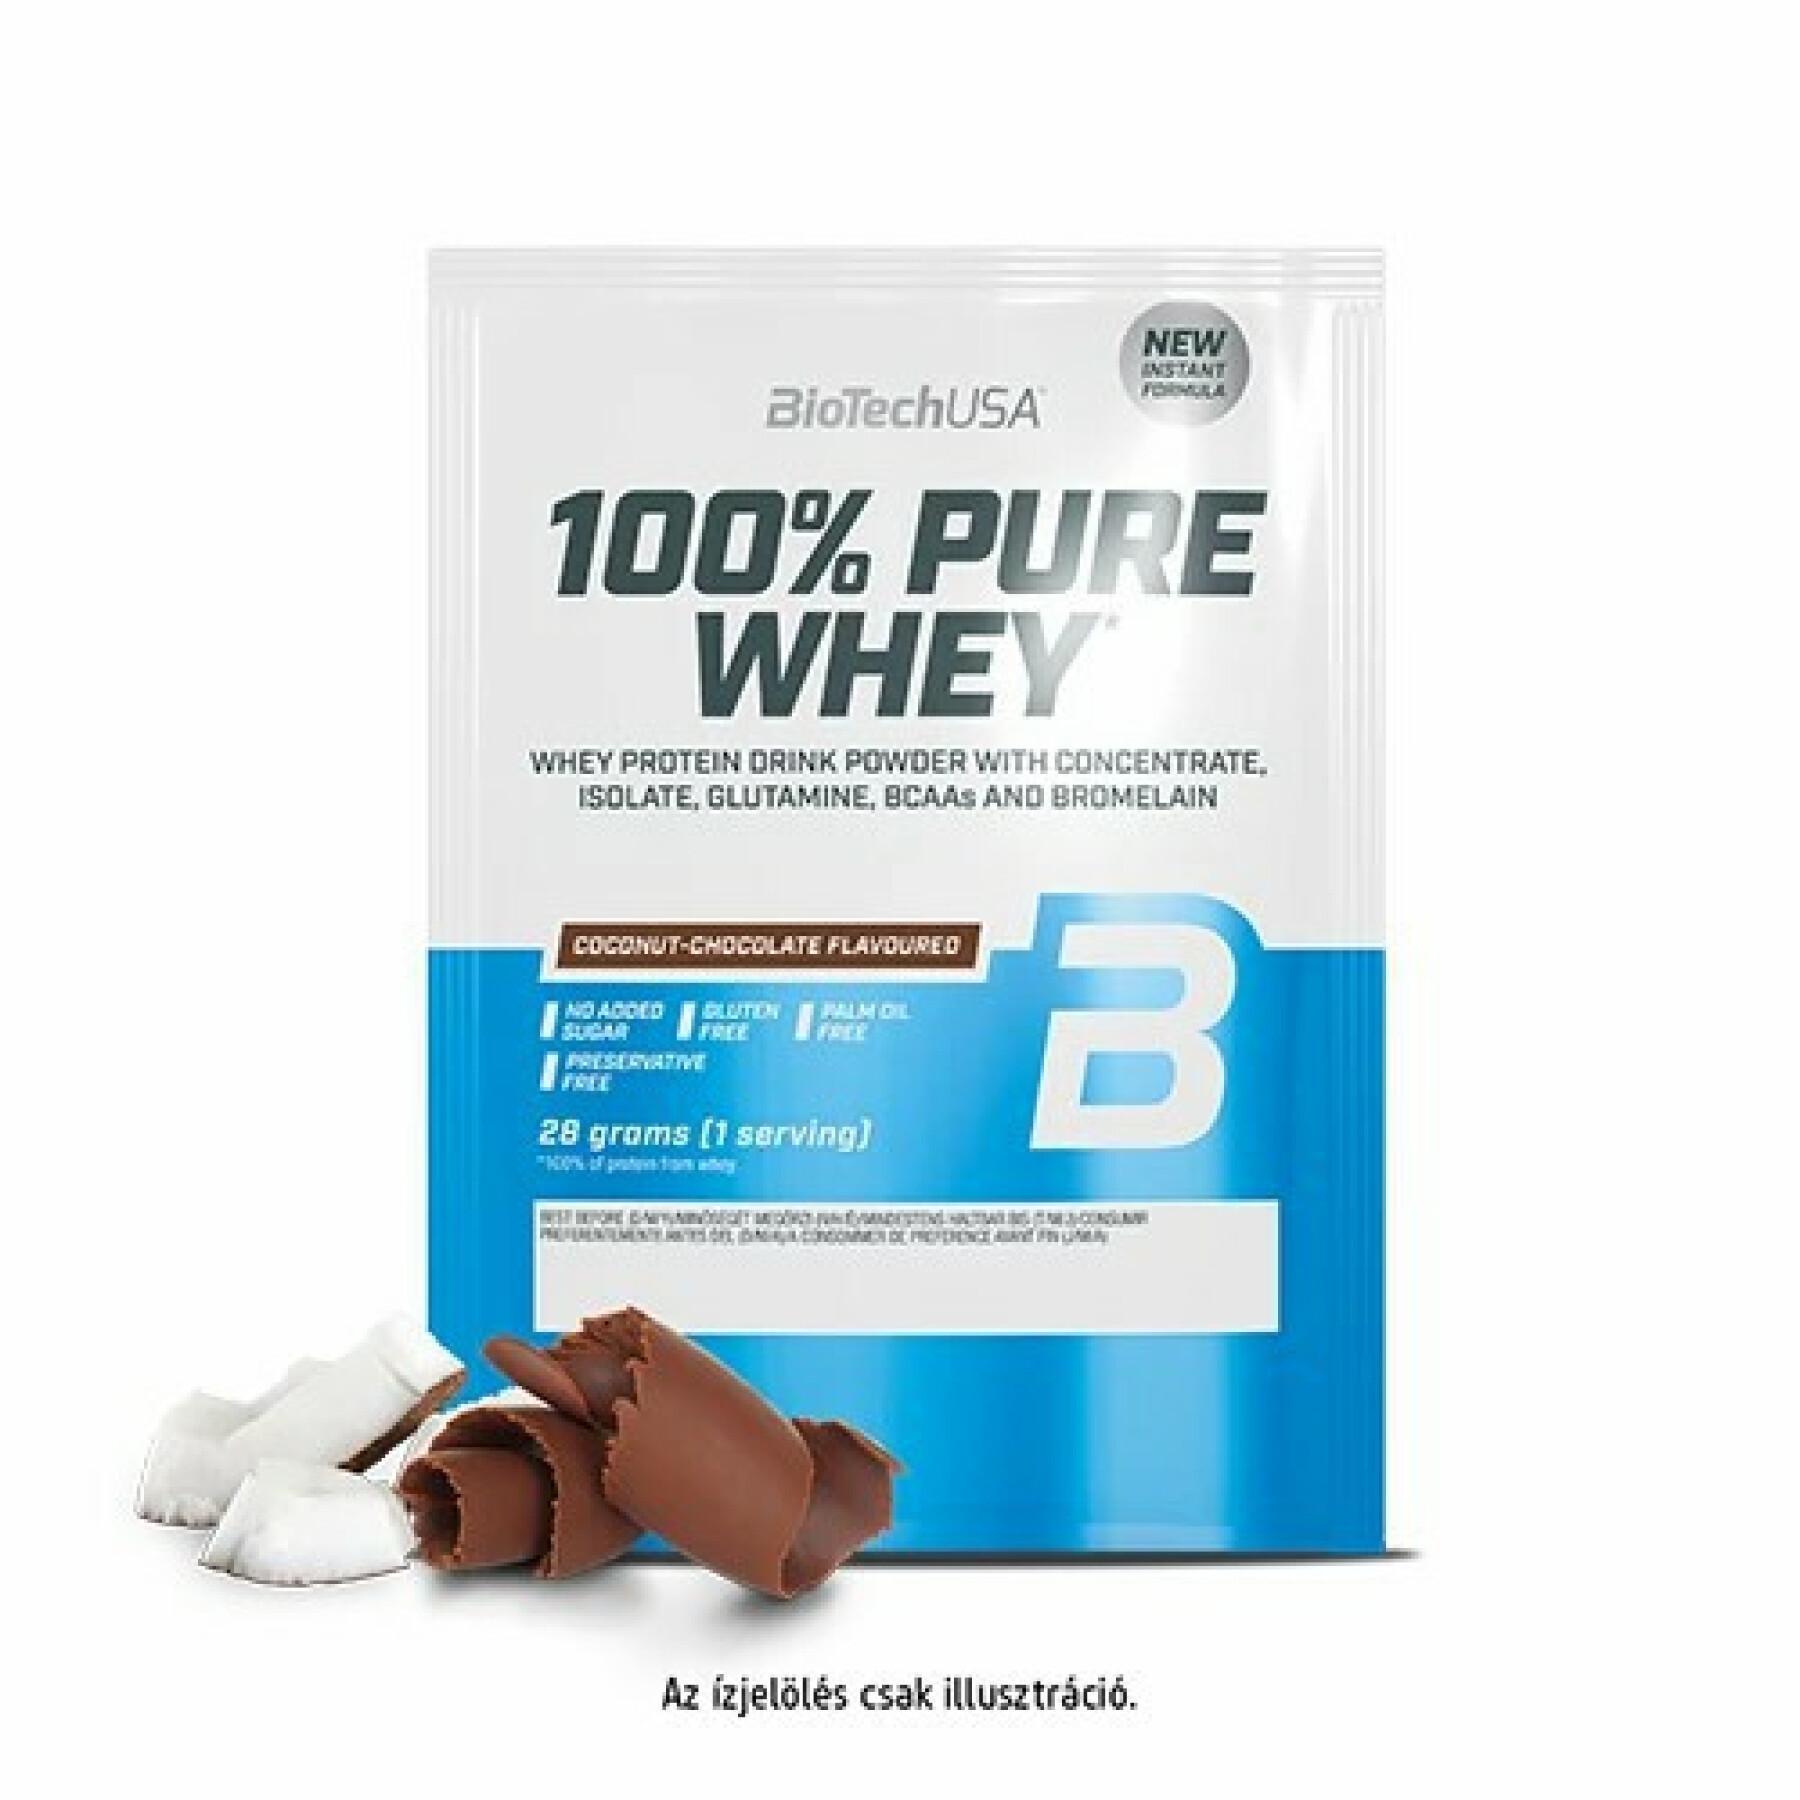 50 pacotes de proteína de soro de leite 100% pura Biotech USA - Noix de coco-chocolat - 28g